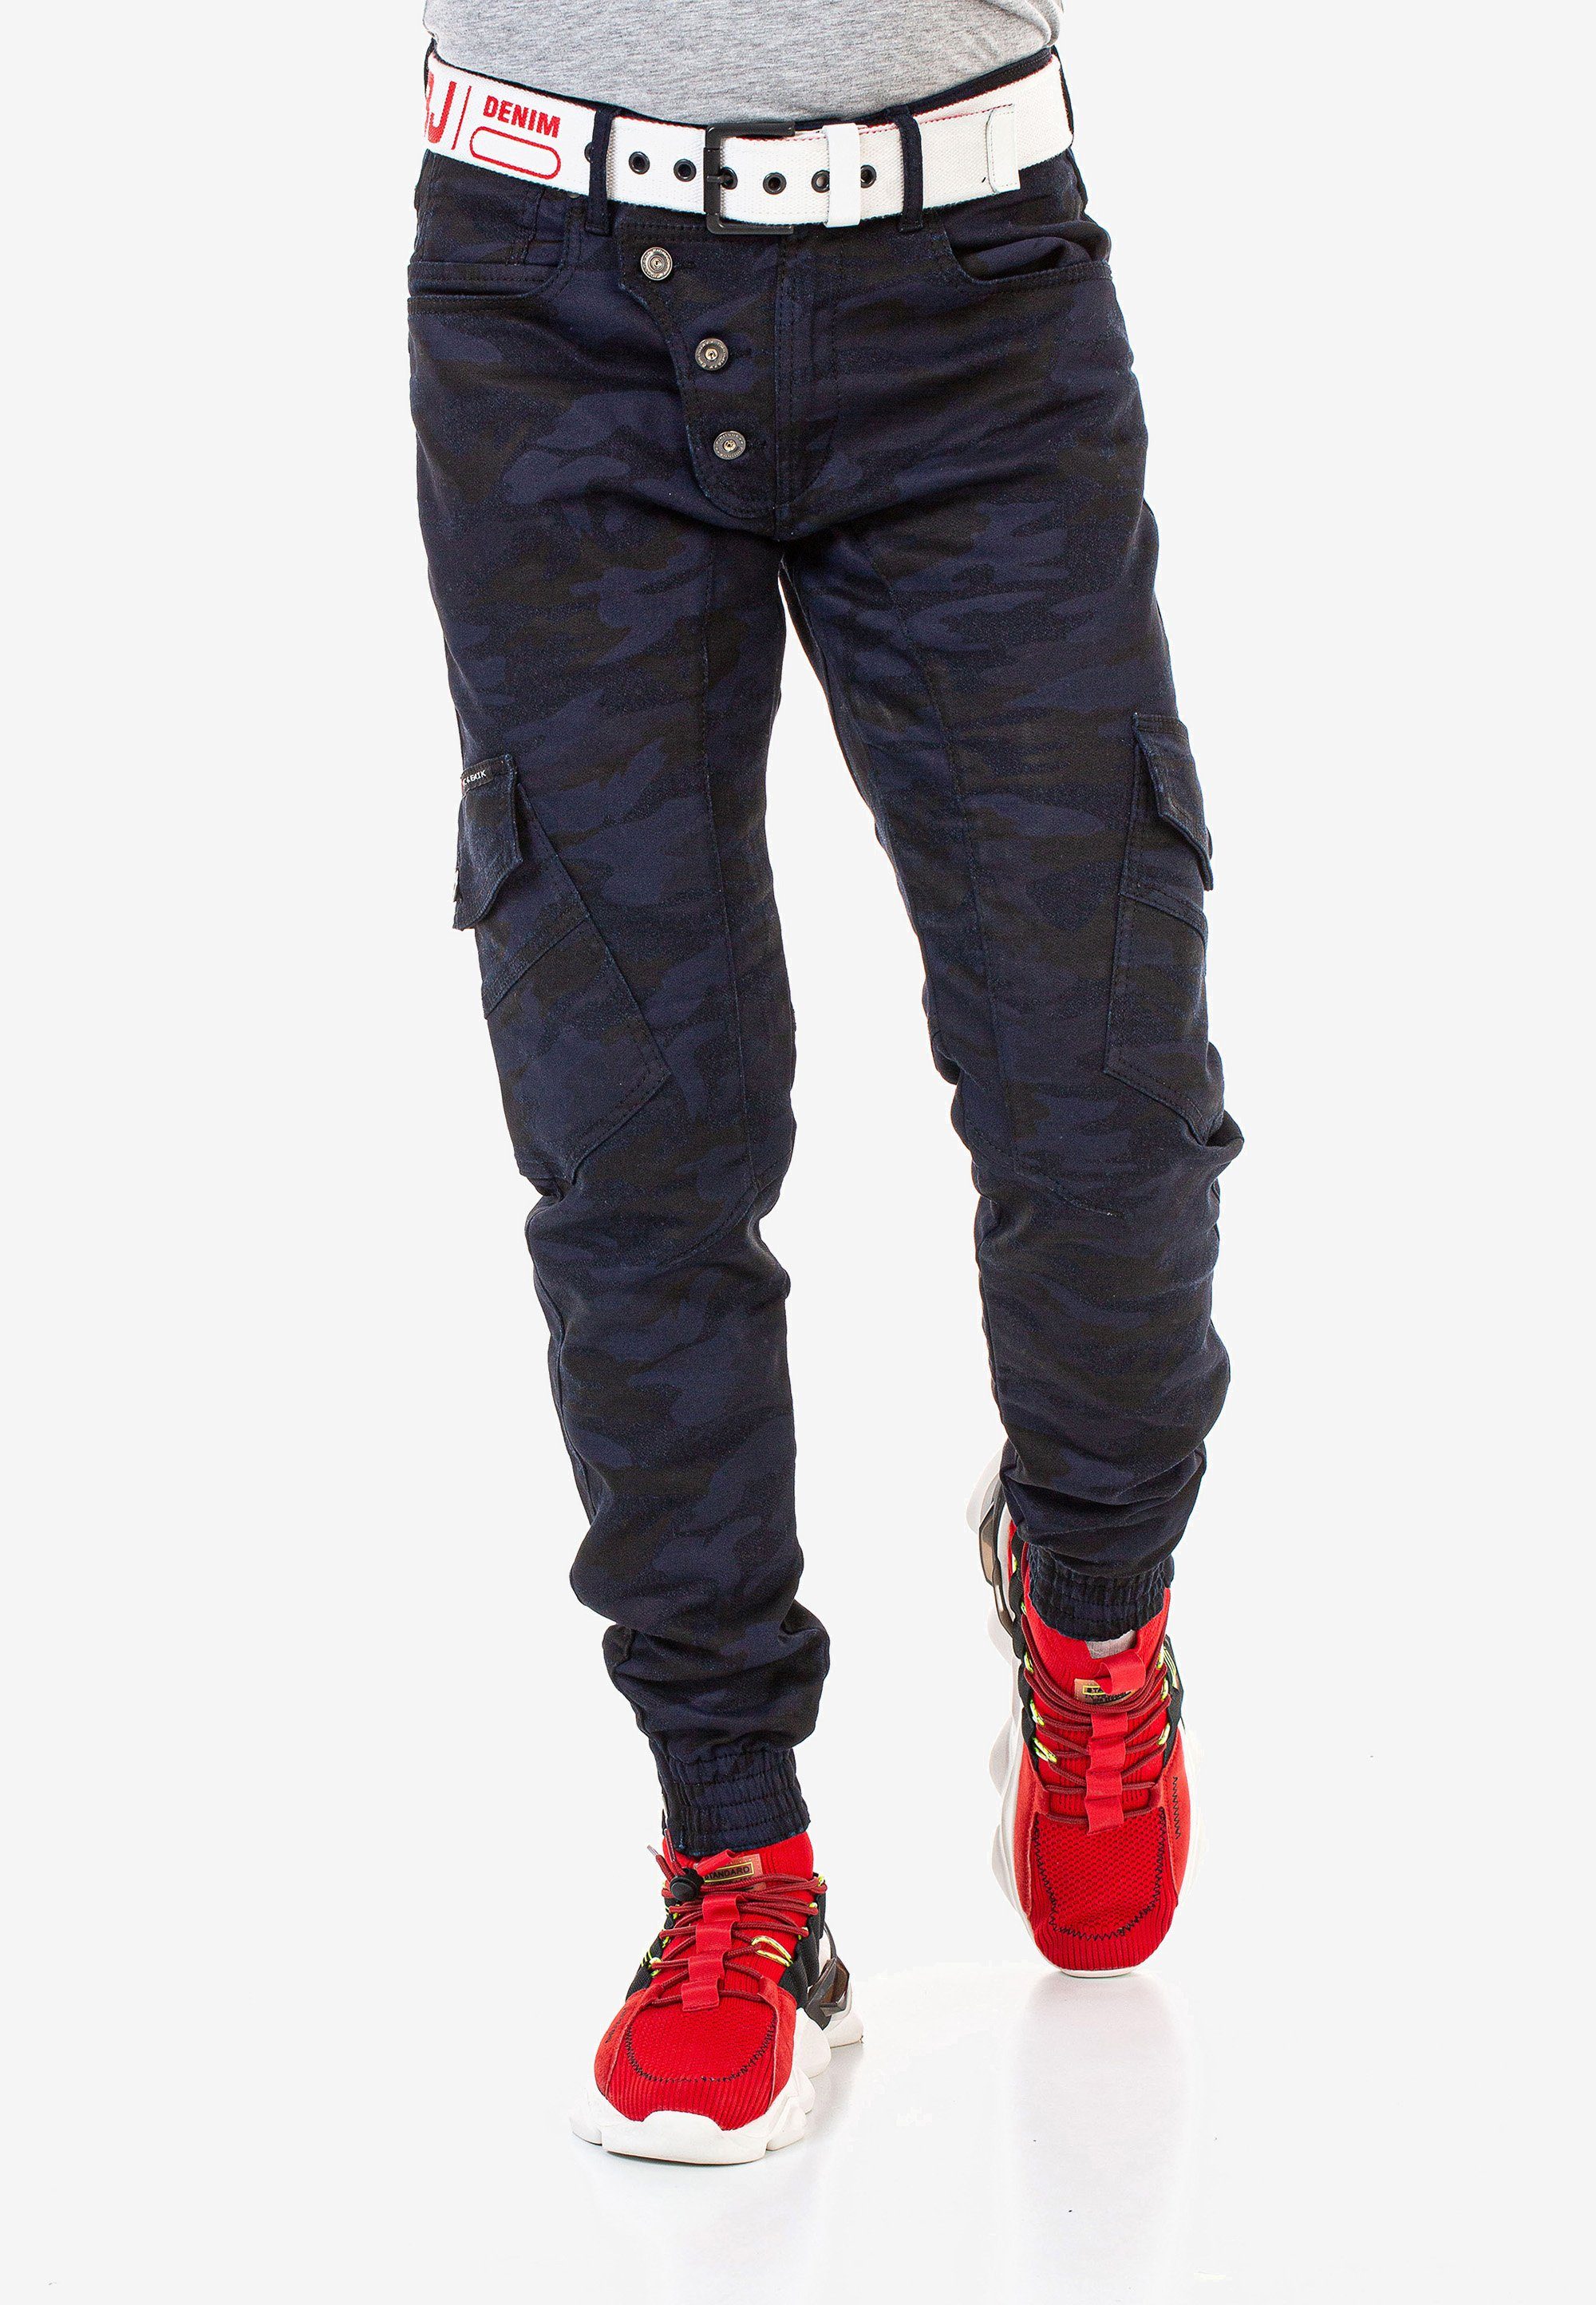 & Cipo Baxx mit Bequeme tollen Cargotaschen Jeans